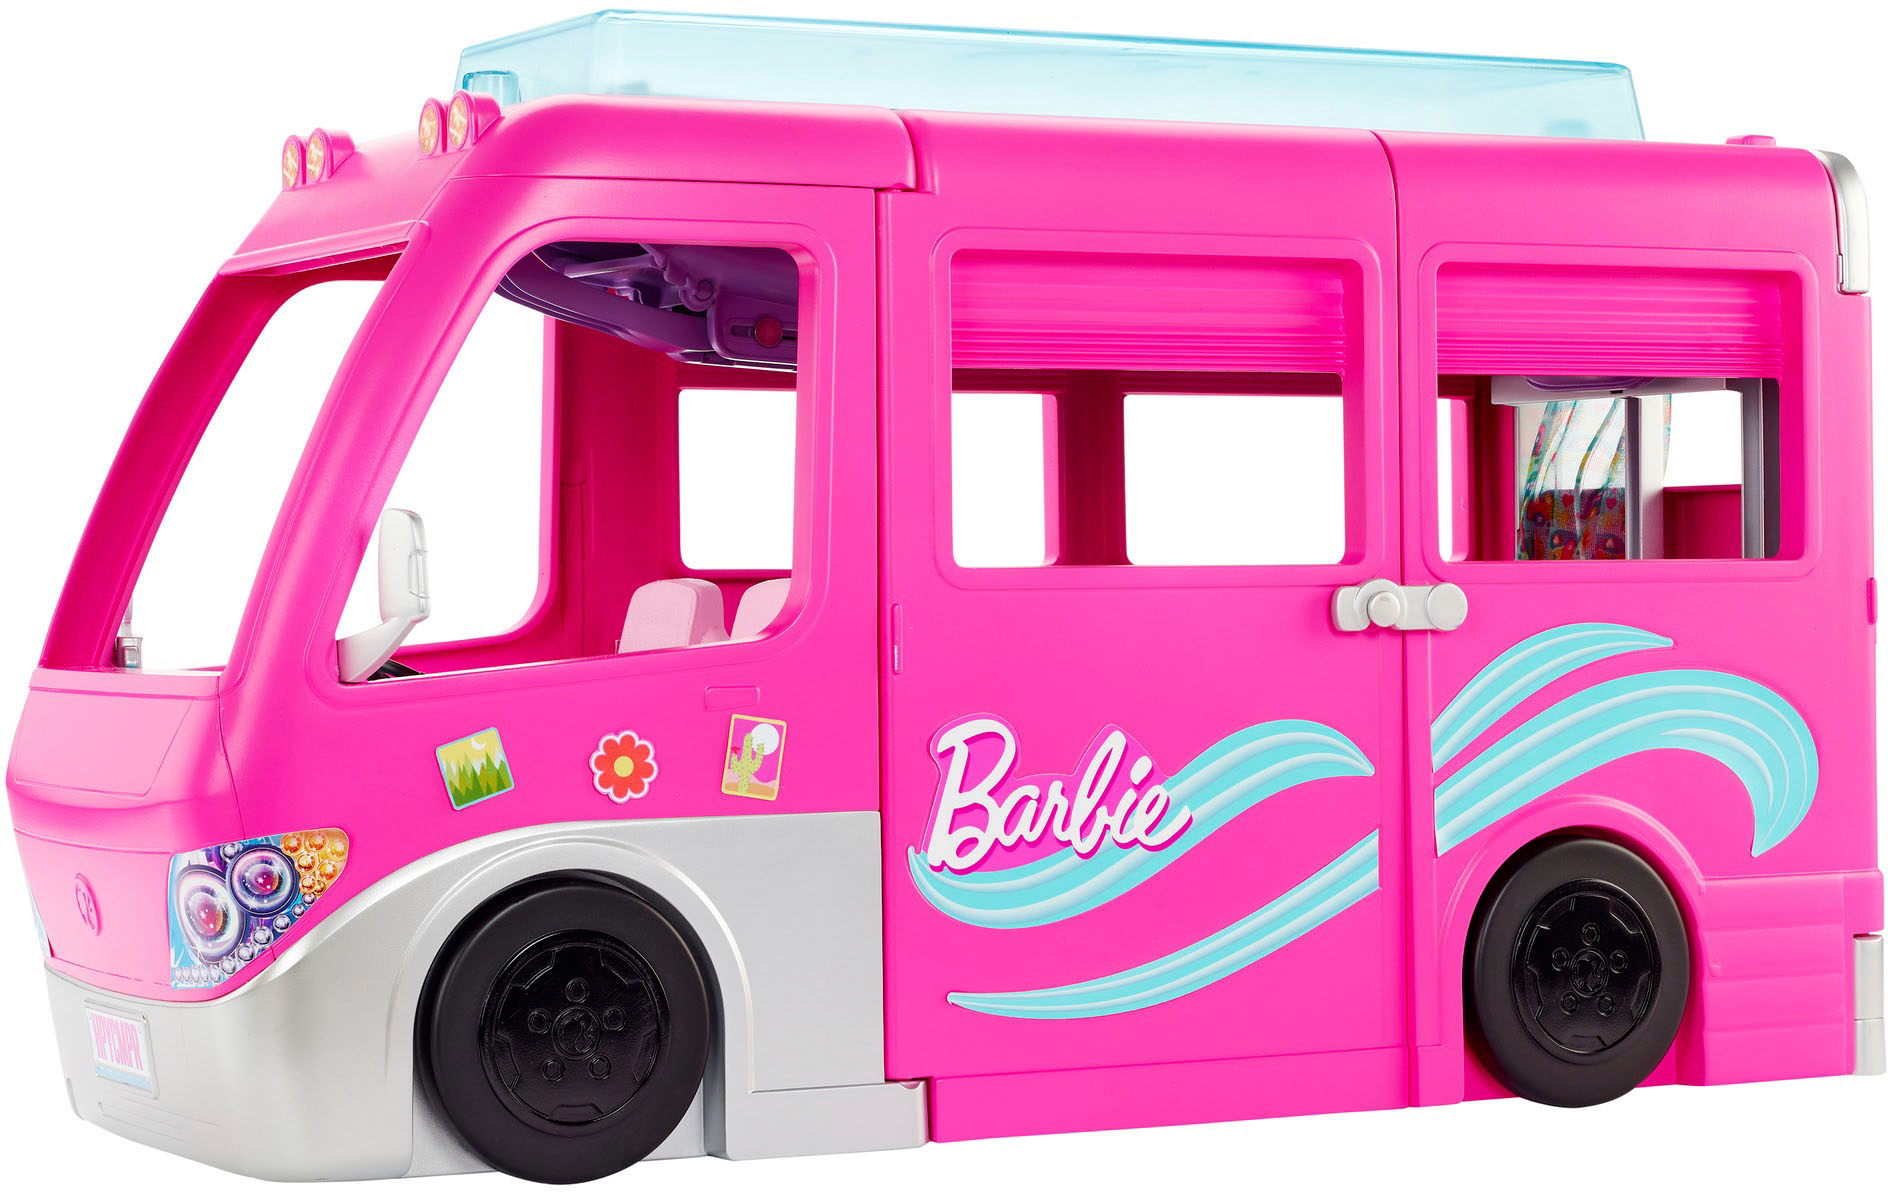 Perceptie Vermomd zwavel Barbie Dream Camper Vehicle Playset HCD46 - Best Buy